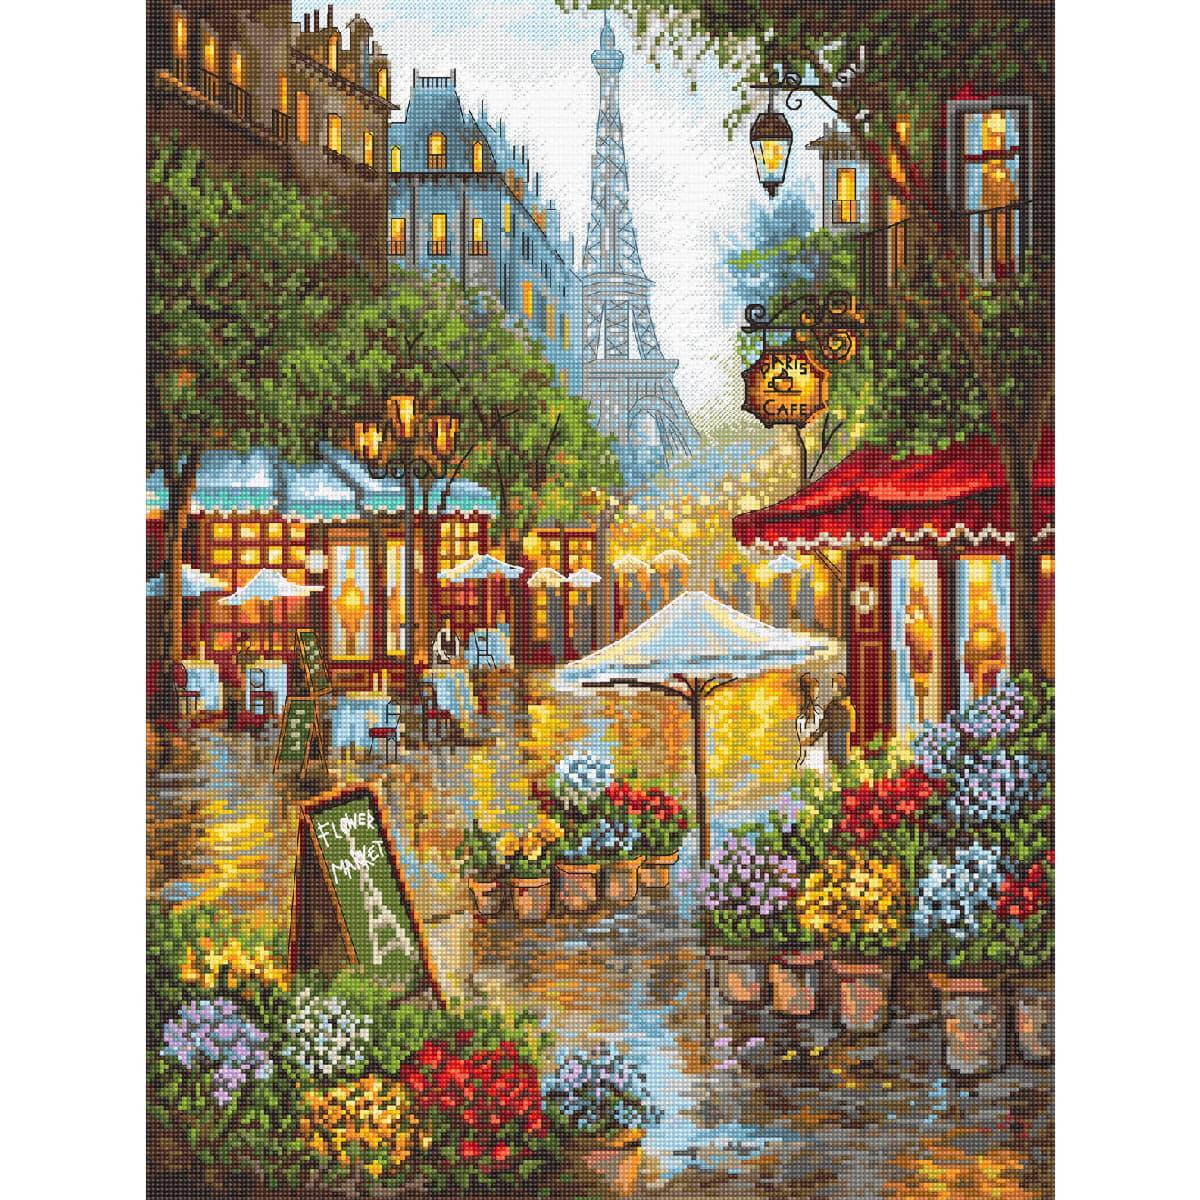 A lively street scene shows a Parisian café next...